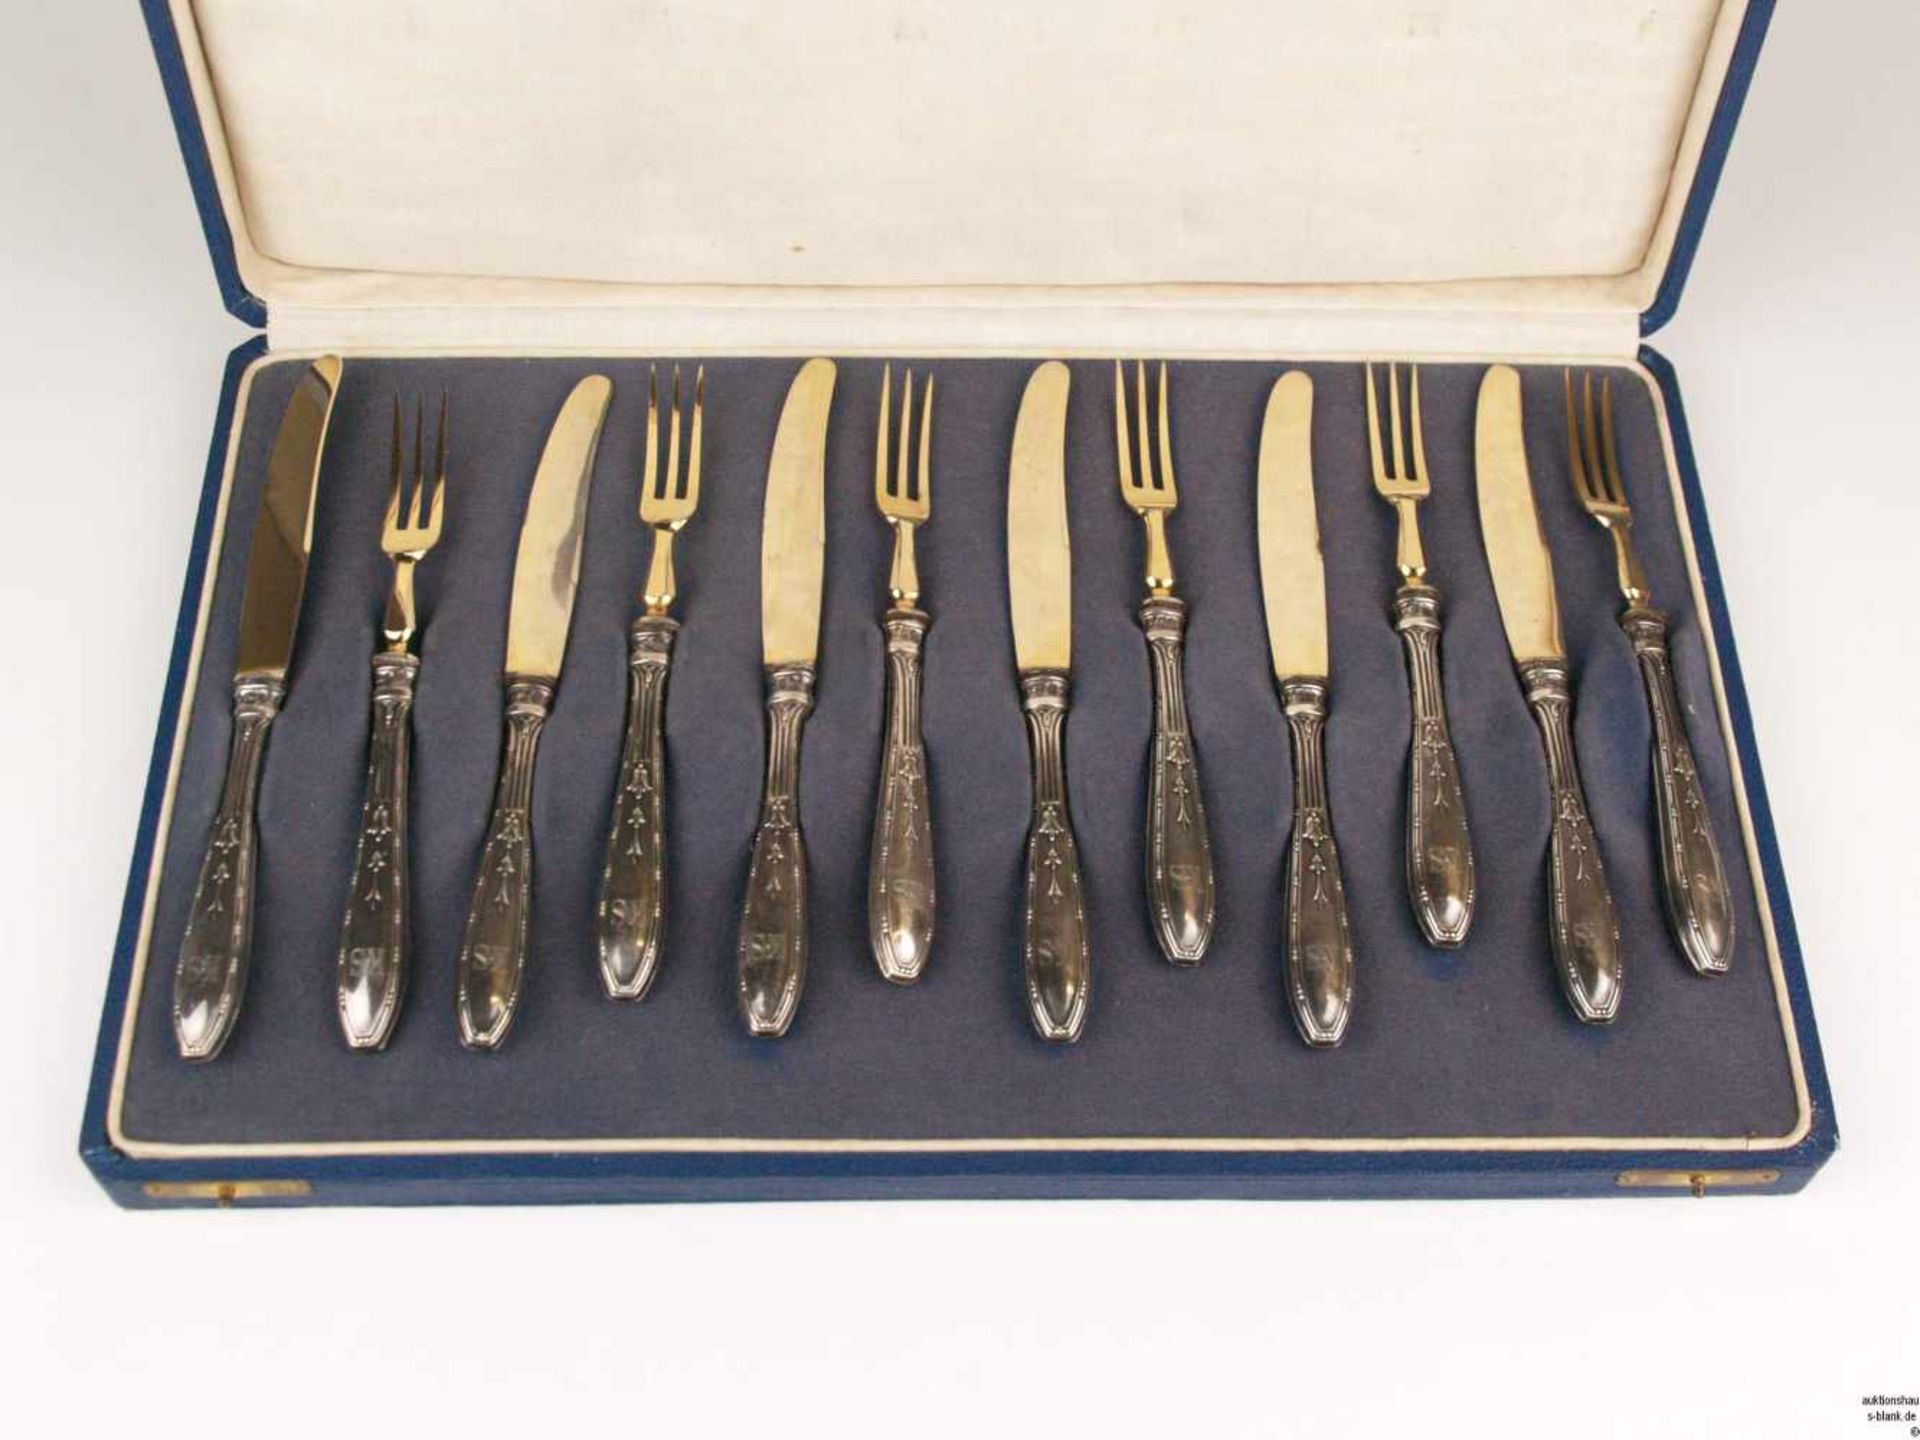 Jugendstil-Obstbesteck für sechs Personen - 12-teilig(6 Gabeln + 6 Messer),Silbergriffe gep.800 - Bild 2 aus 4